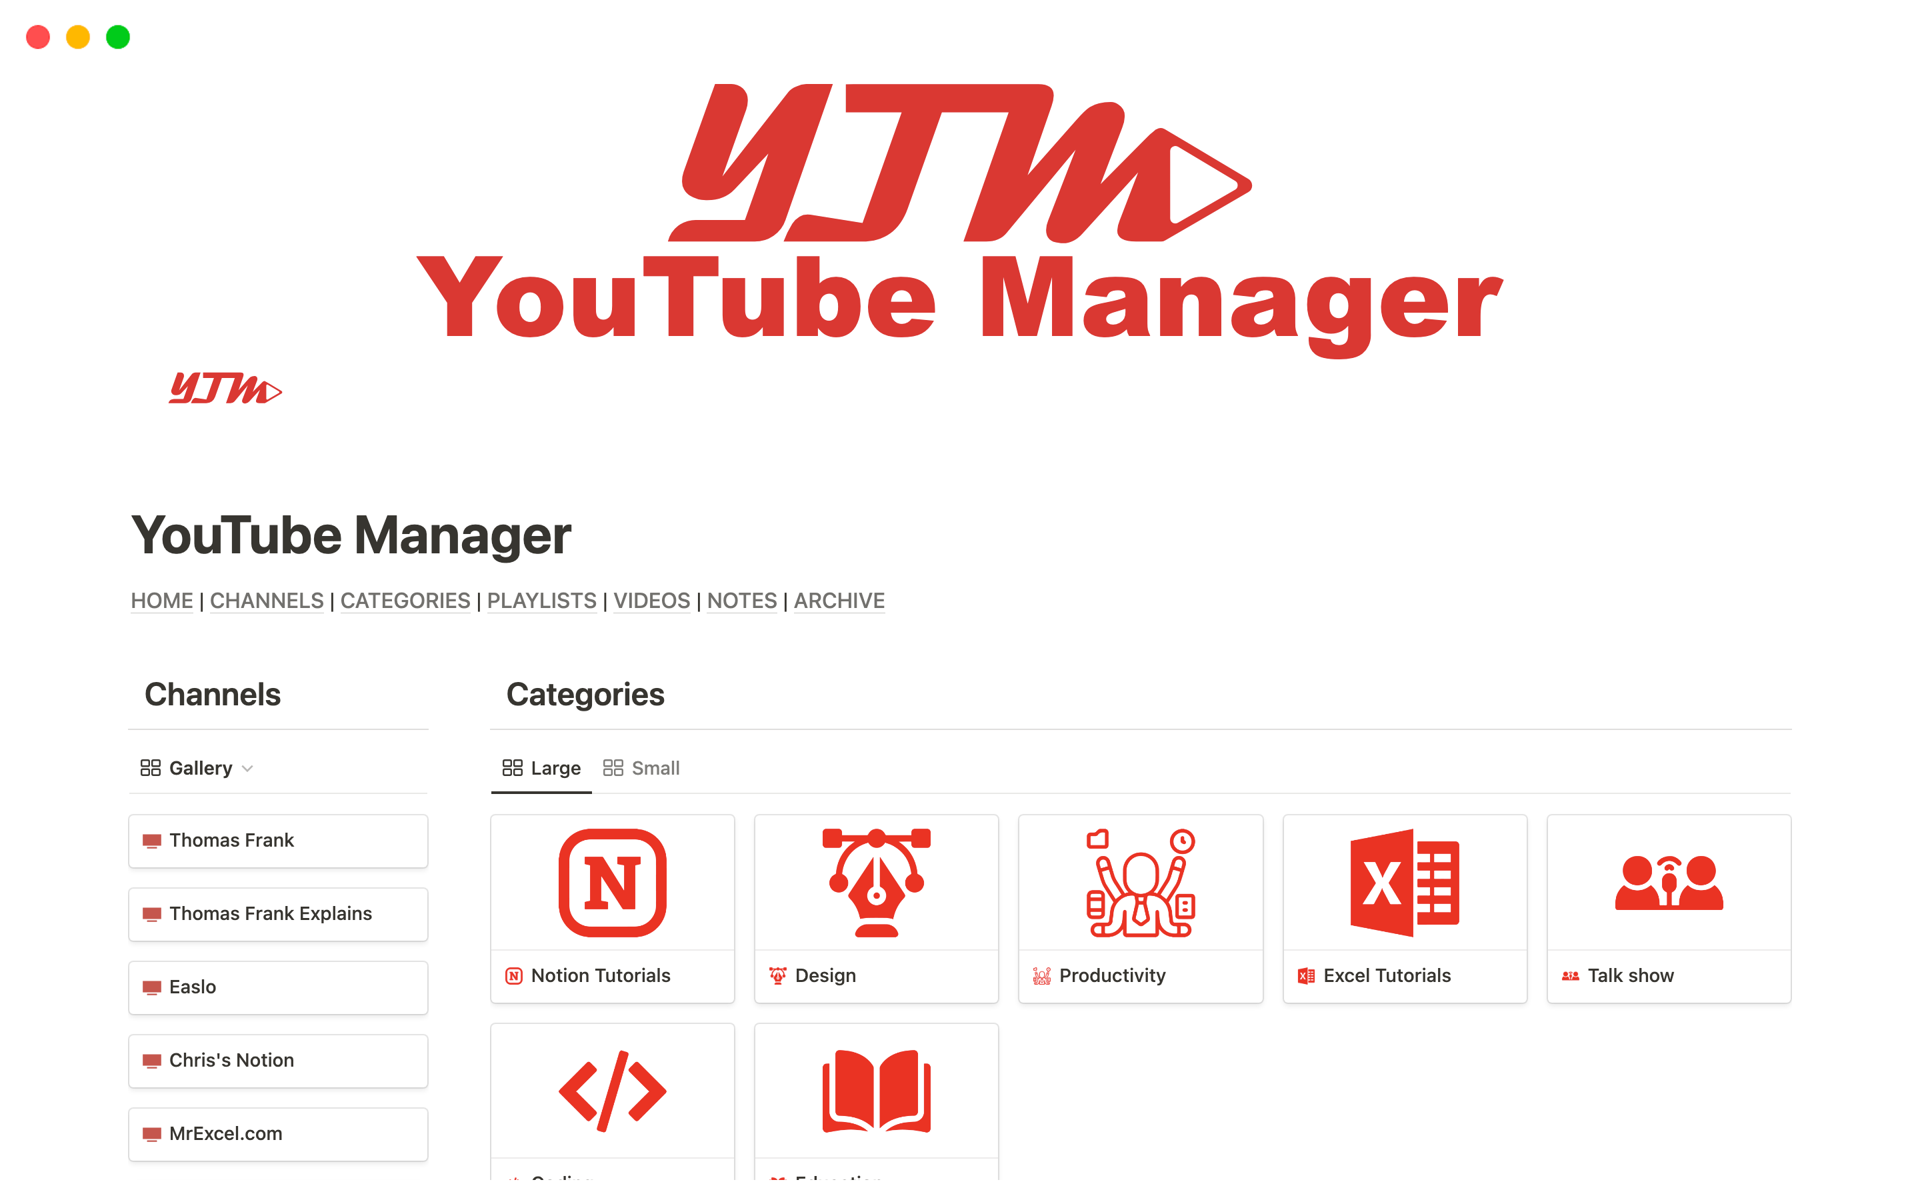 Vista previa de plantilla para YouTube Manager